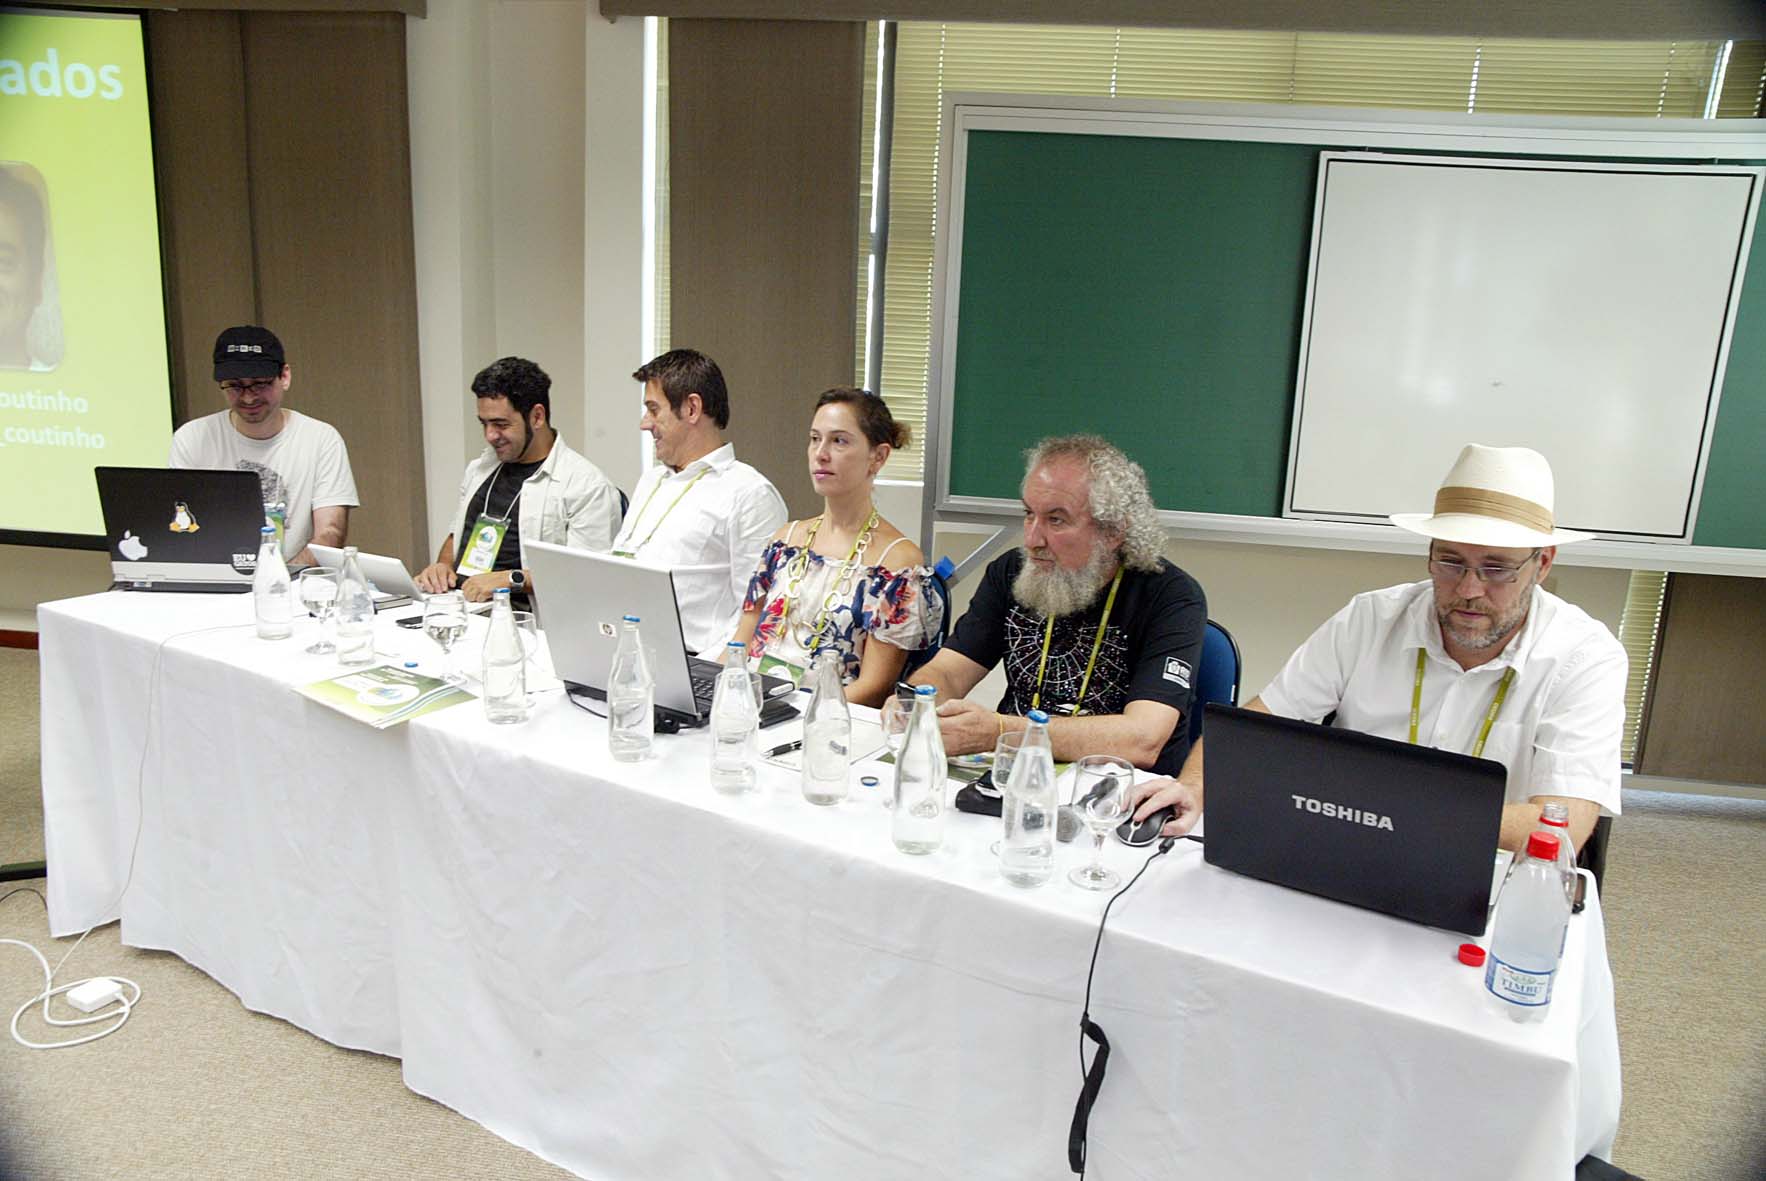 O encontro em Curitiba reuniu "twitteiros" como nesta mesa redonda (foto: divulgação)